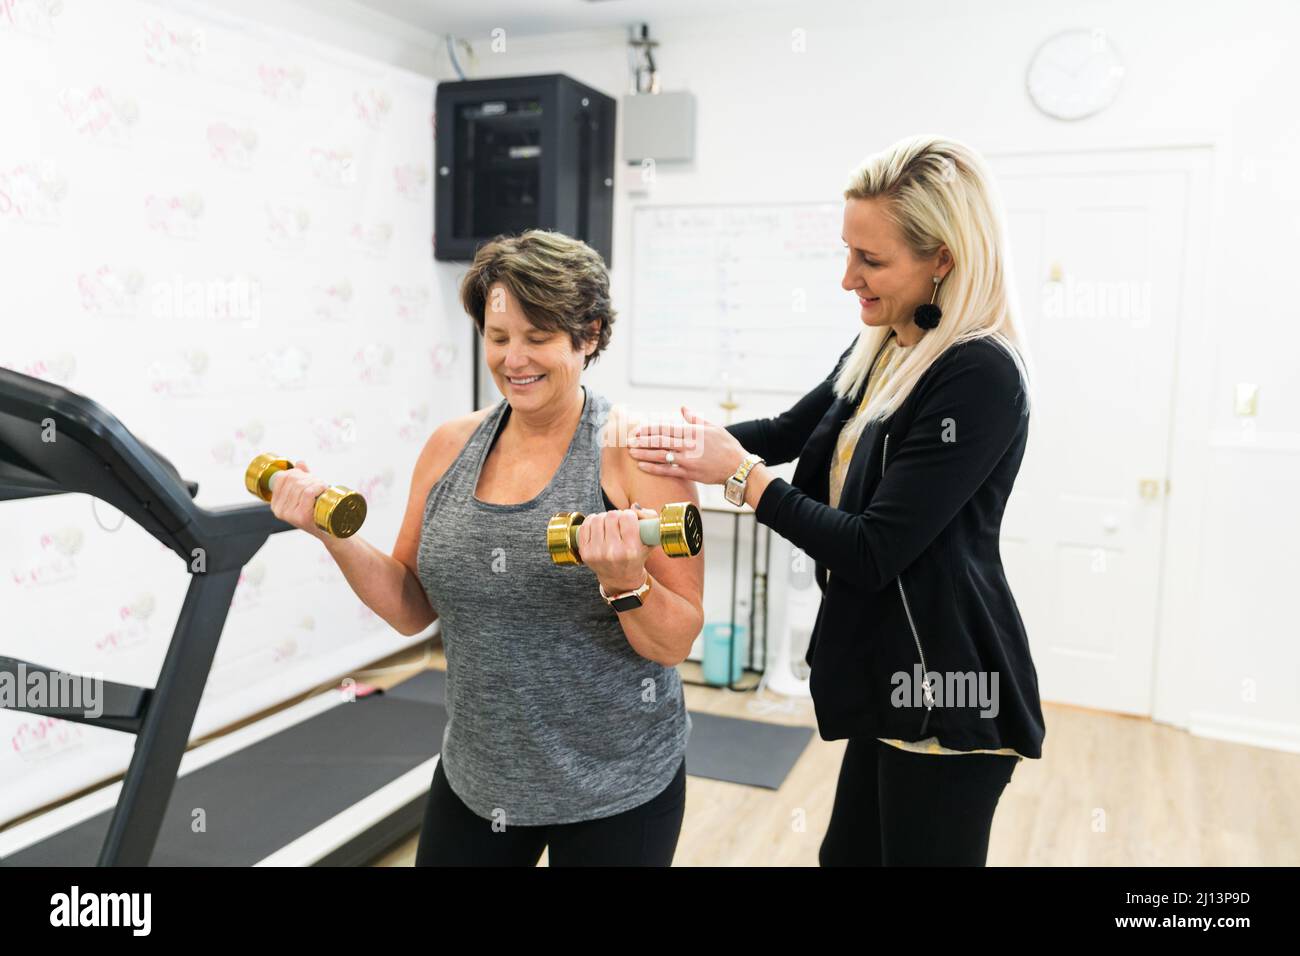 Un personal trainer femminile che aiuta un cliente esercizio fisico, addestrare, e costruire il muscolo utilizzando piccoli pesi a mano in una palestra Foto Stock